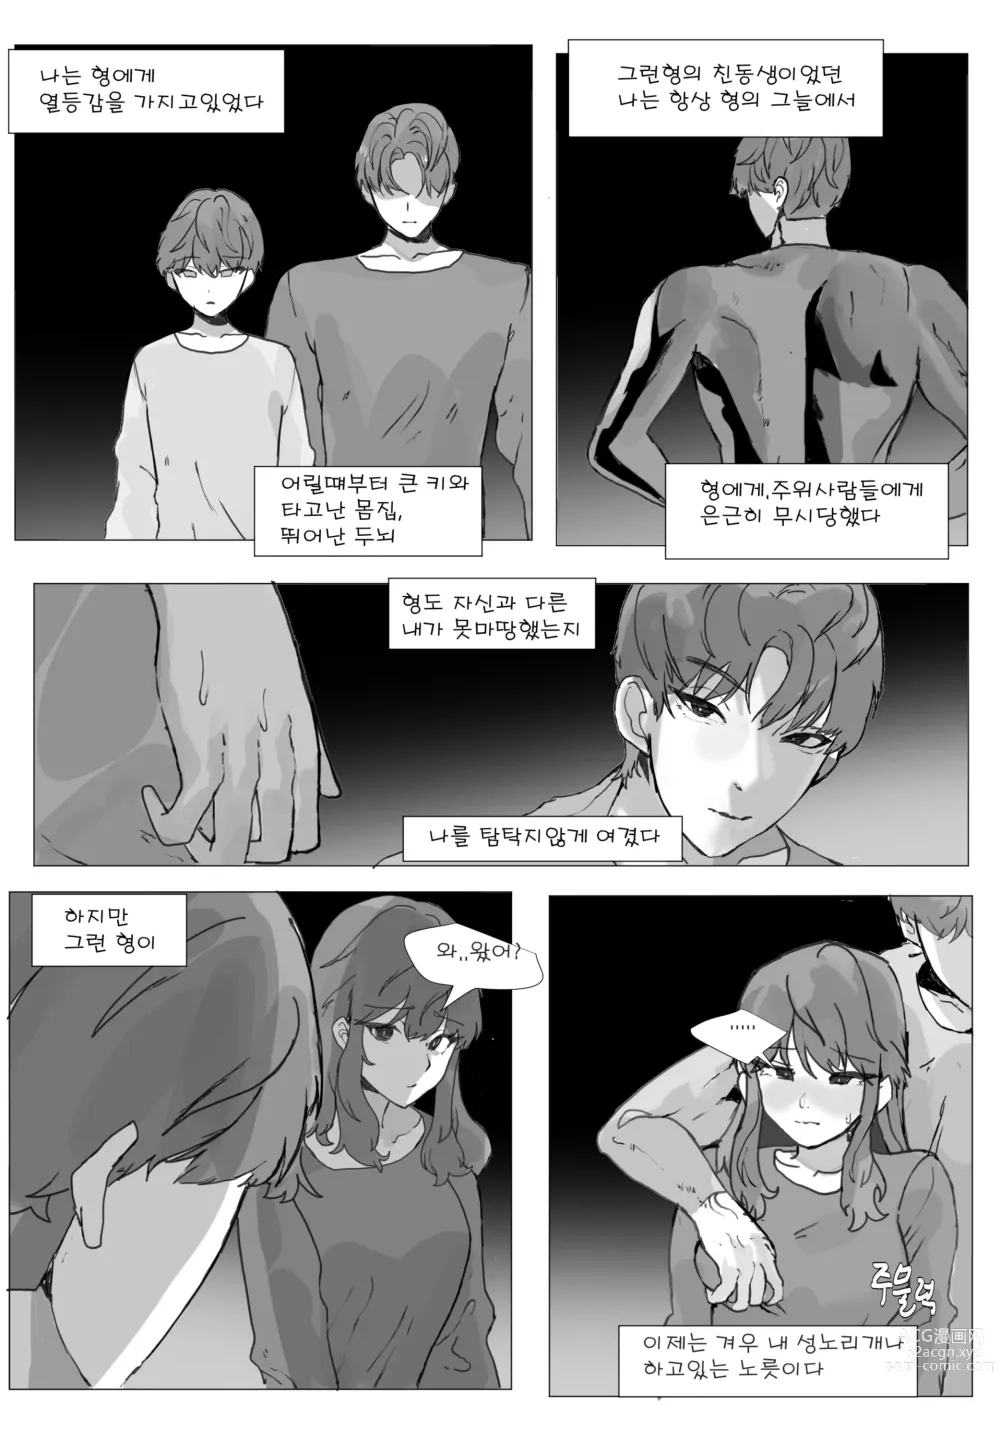 Page 2 of doujinshi 어느날 나는 TS 되었다 -2